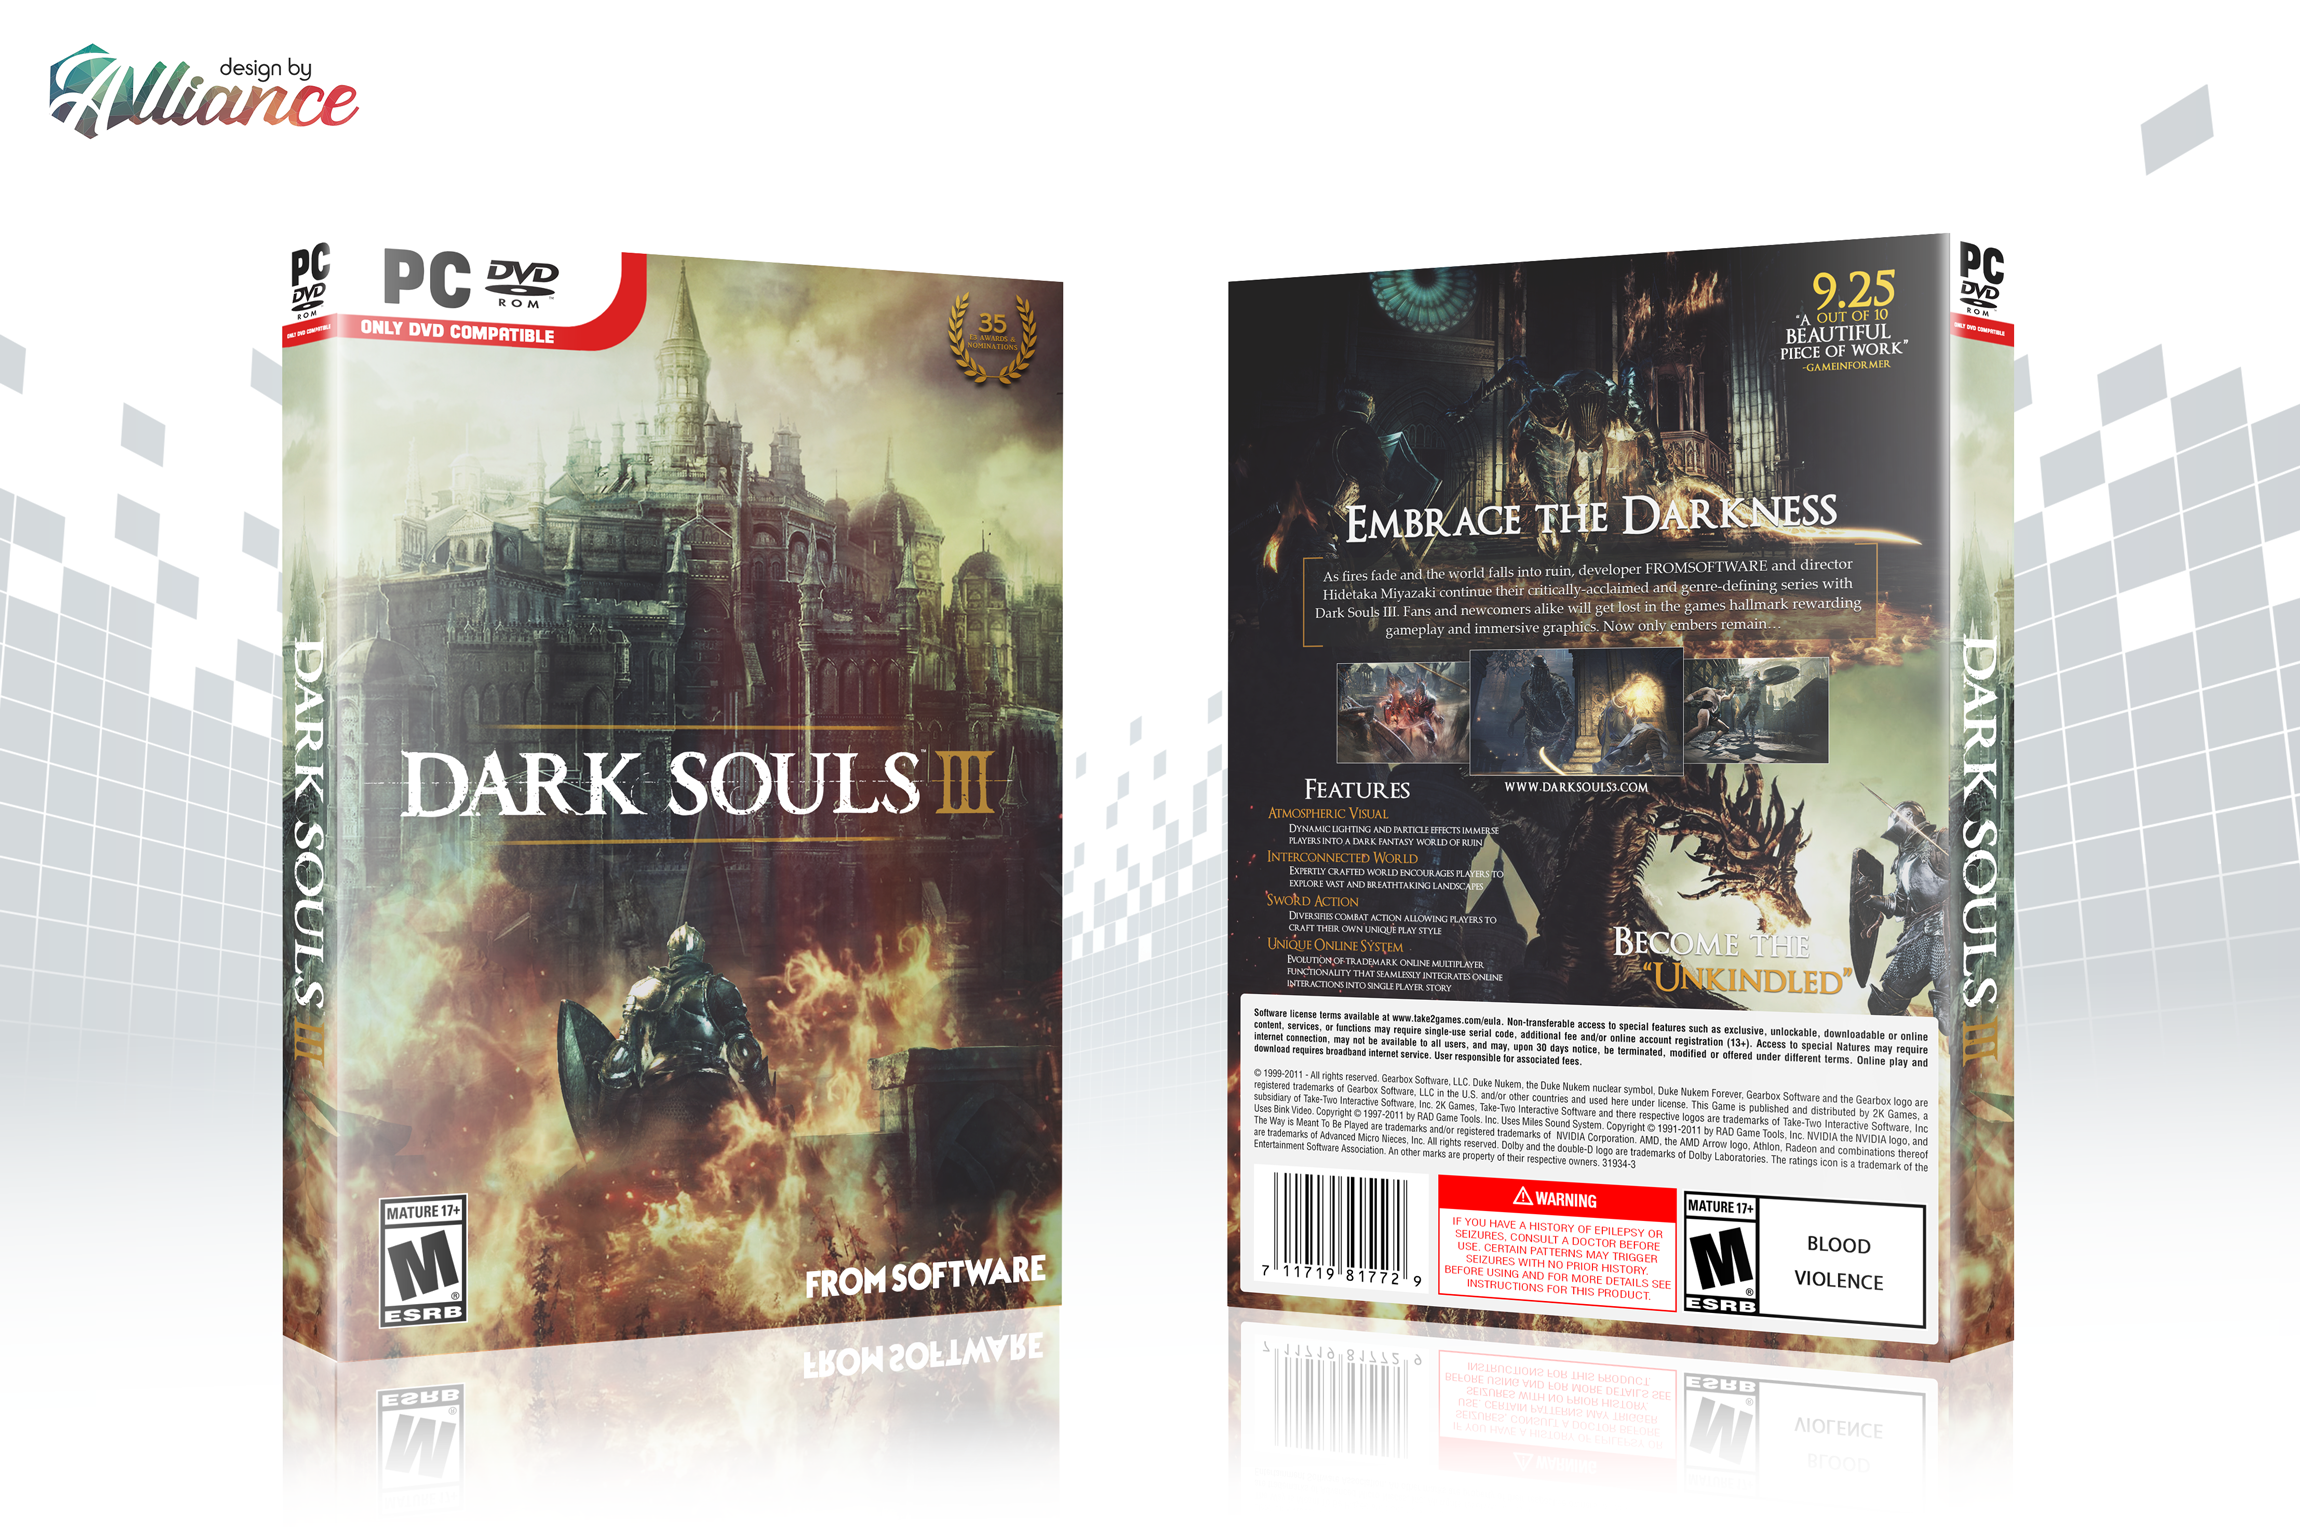 Dark Souls III box cover